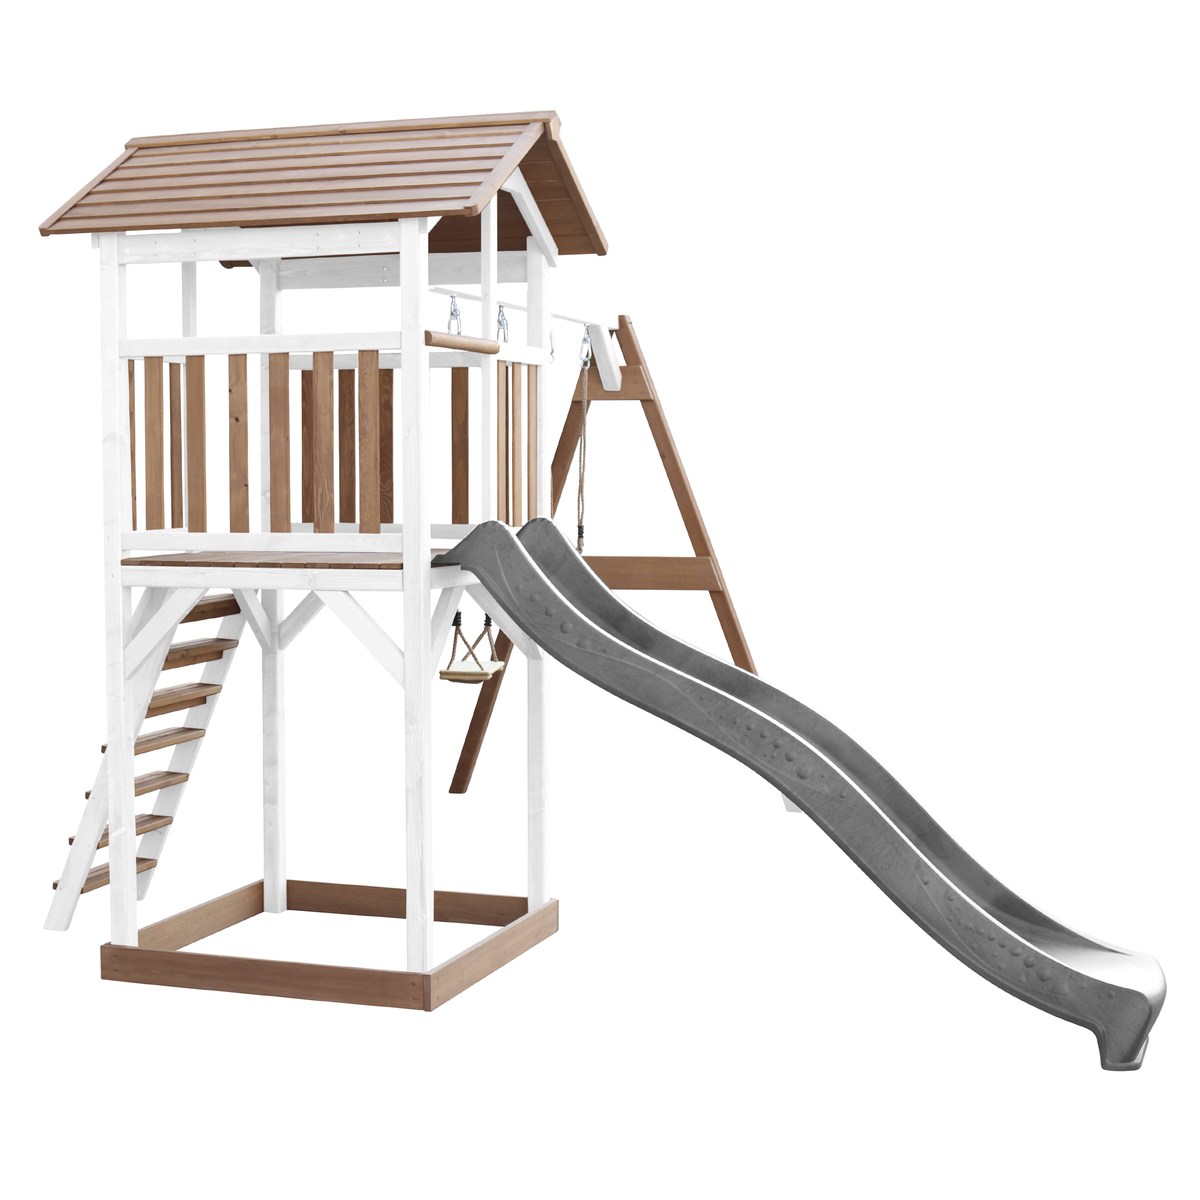 Spielturm Beach Tower Double Swing braun/weiß mit Rutsche grau